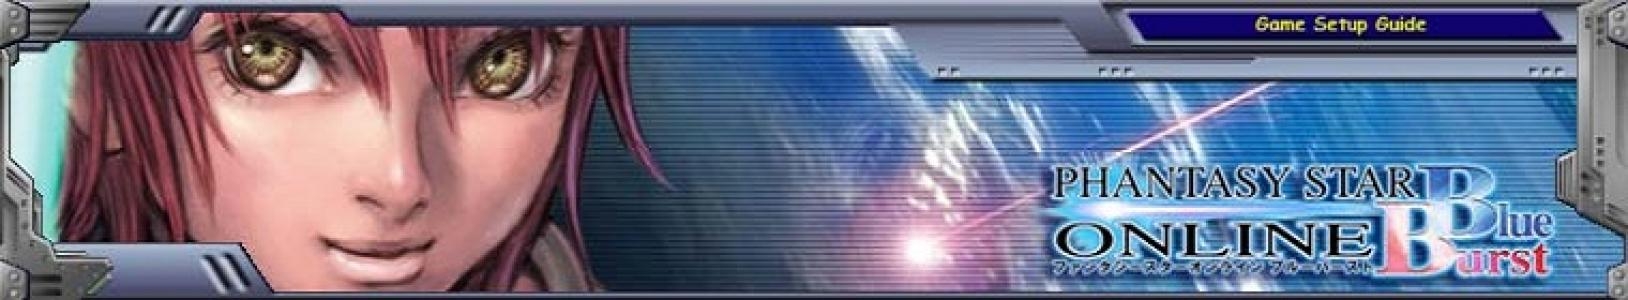 Phantasy Star Online: Blue Burst banner